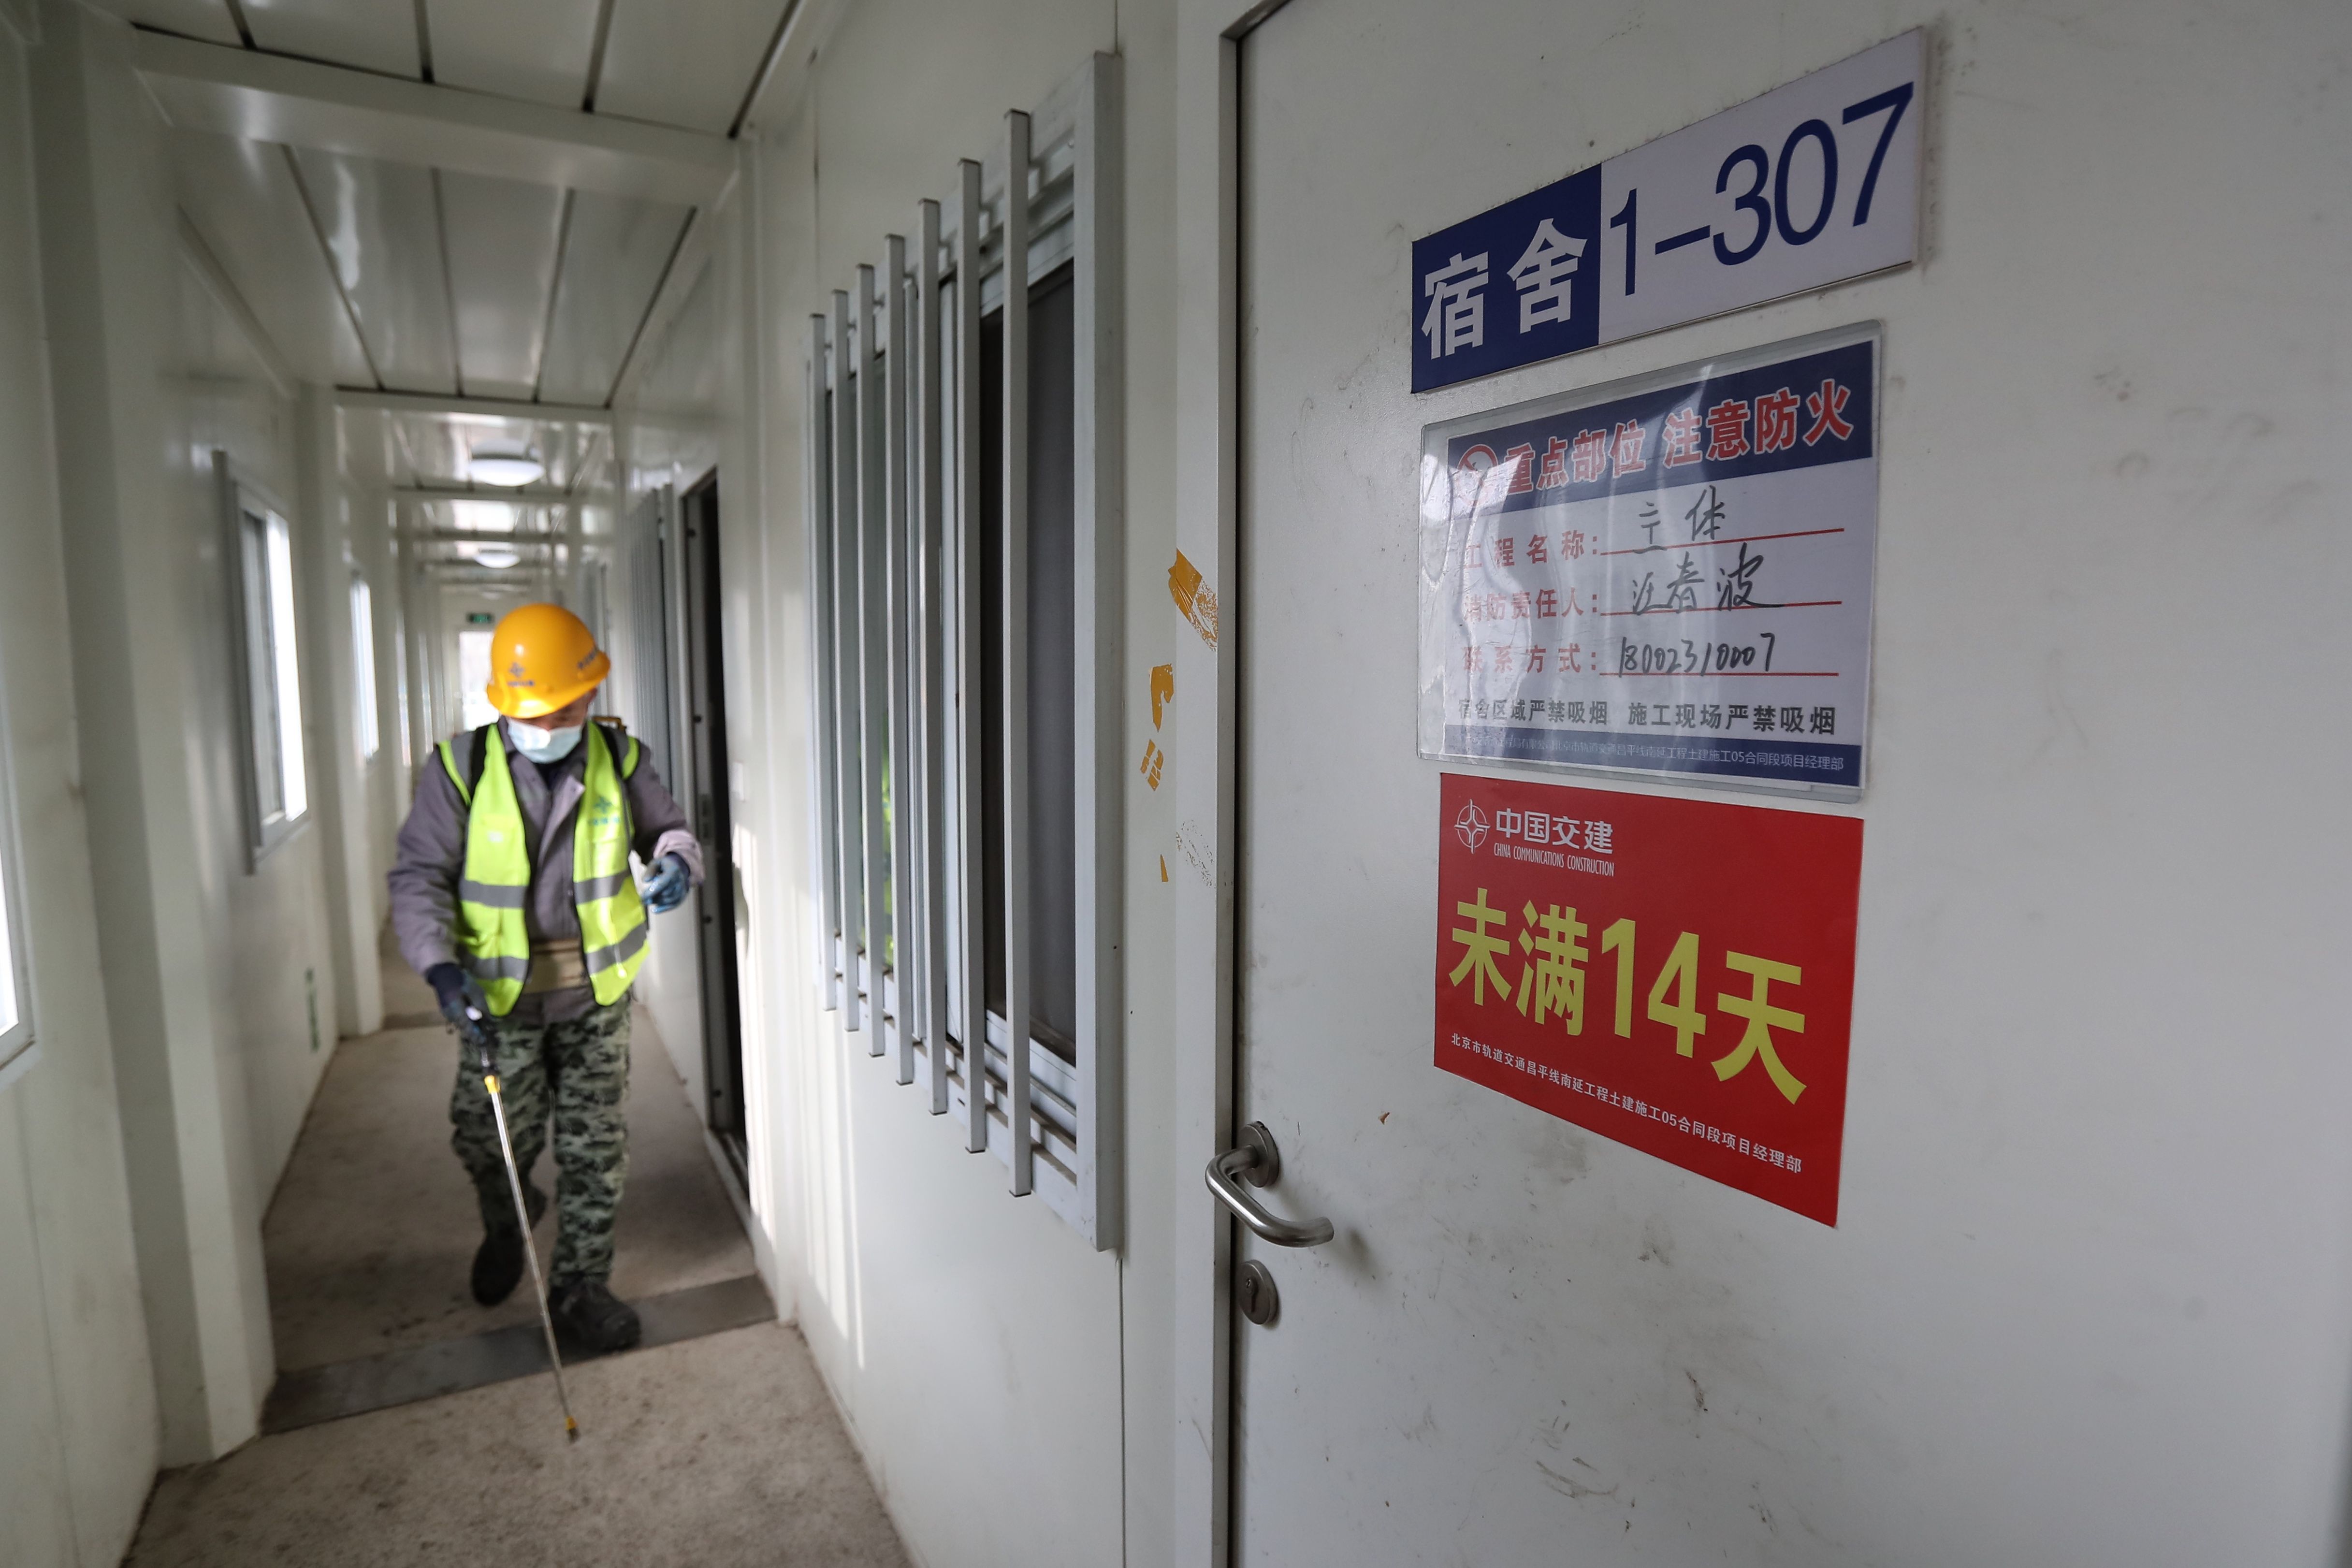 工人分级住单独就餐 北京地铁昌平线南延全面复工